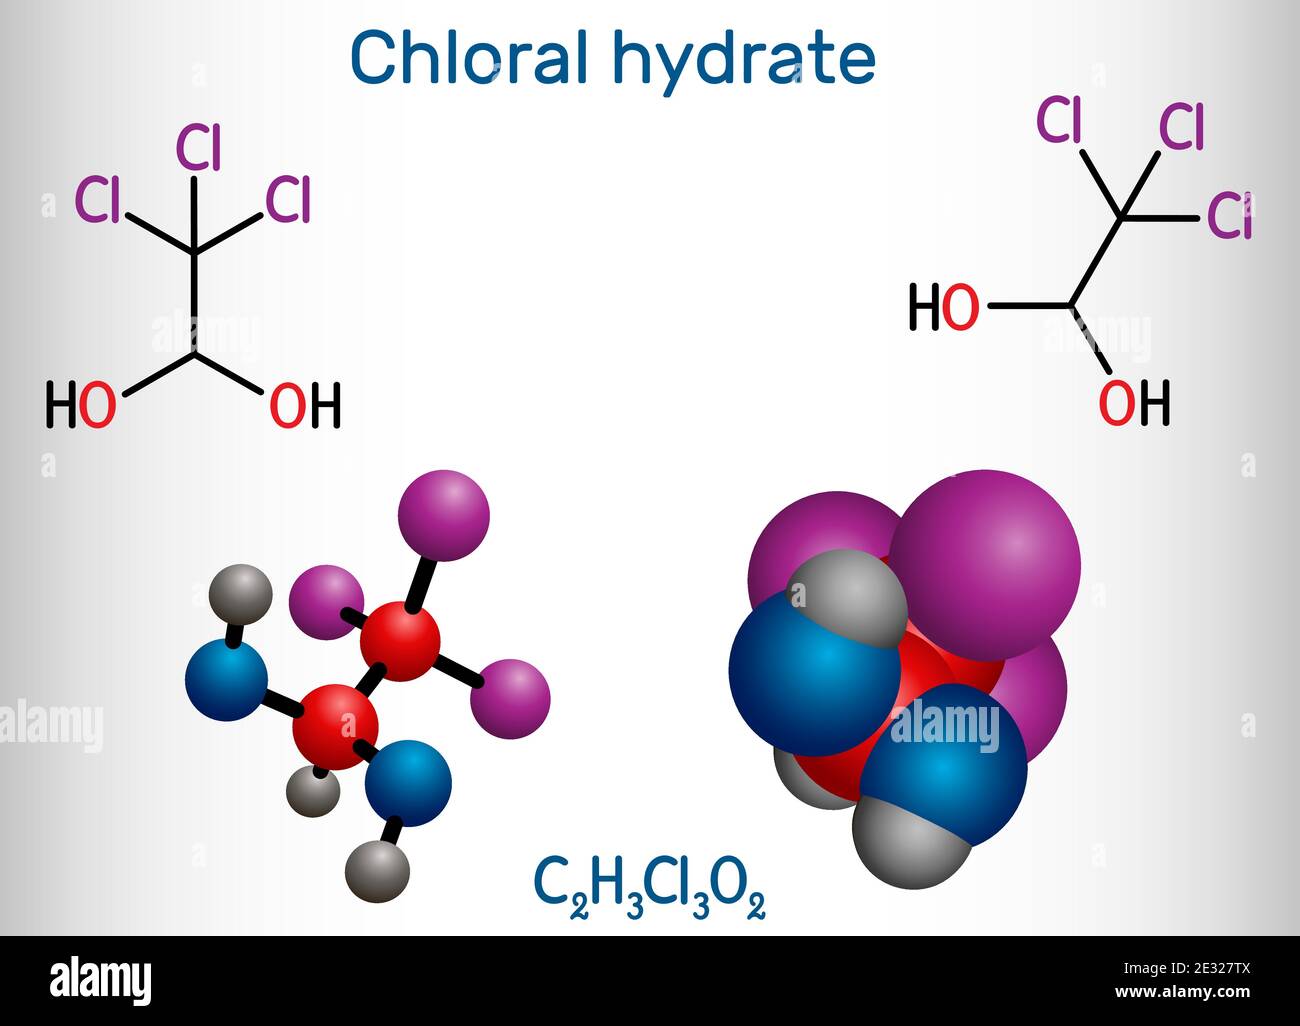 Hydrate de chloral. Diol géminal, molécule anesthésique. Monohydrate synthétique de choral, hypnotique et sédatif, anticonvulsif. Structure Illustration de Vecteur